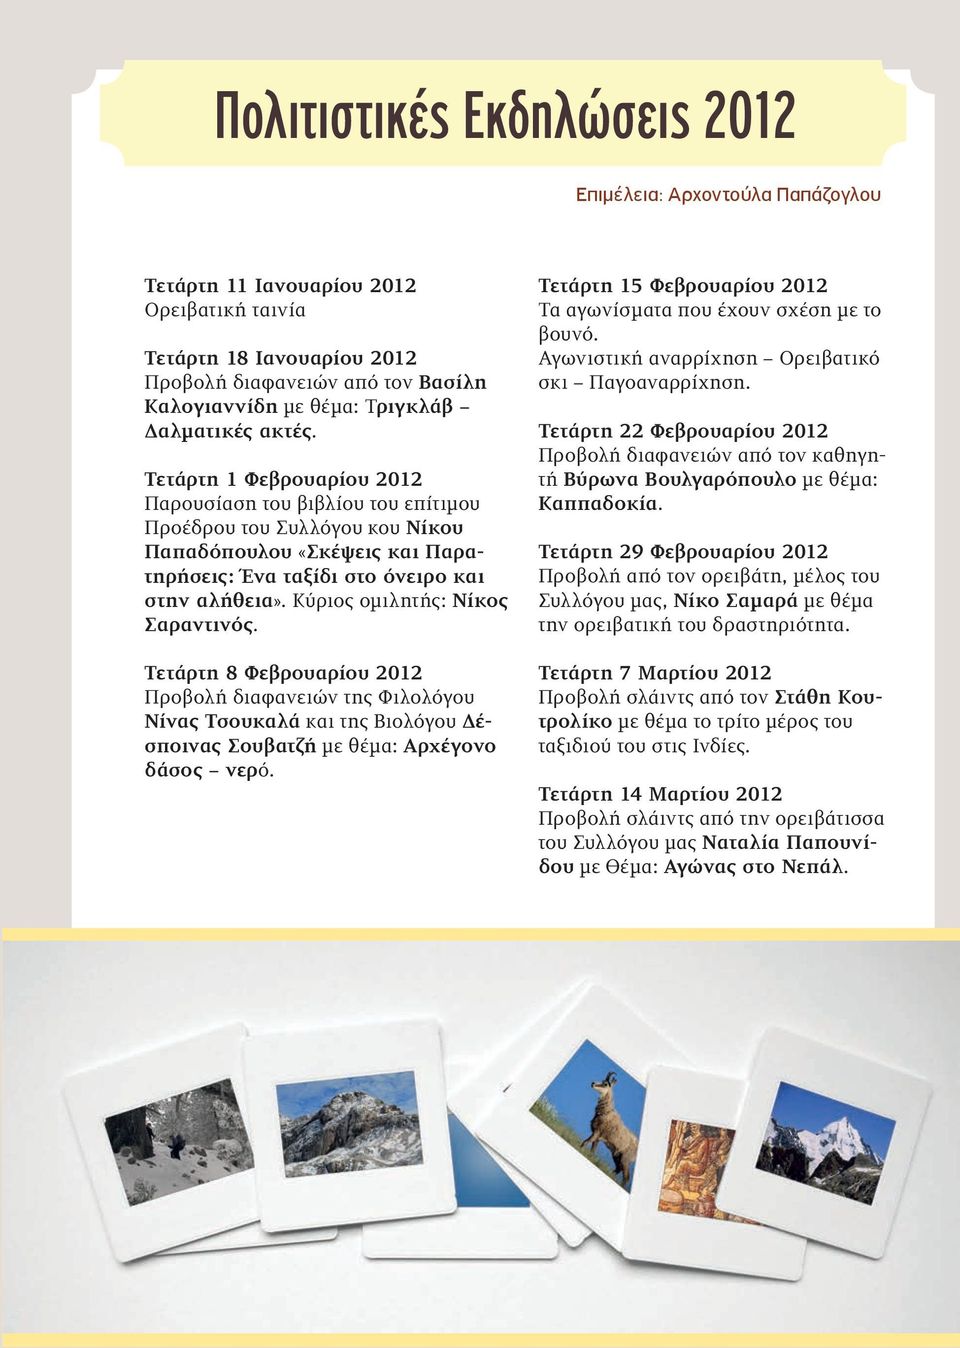 Κύριος ομιλητής: Νίκος Σαραντινός. Τετάρτη 8 Φεβρουαρίου 2012 Προβολή διαφανειών της Φιλολόγου Νίνας Τσουκαλά και της Βιολόγου Δέσποινας Σουβατζή με θέμα: Αρχέγονο δάσος νερό.